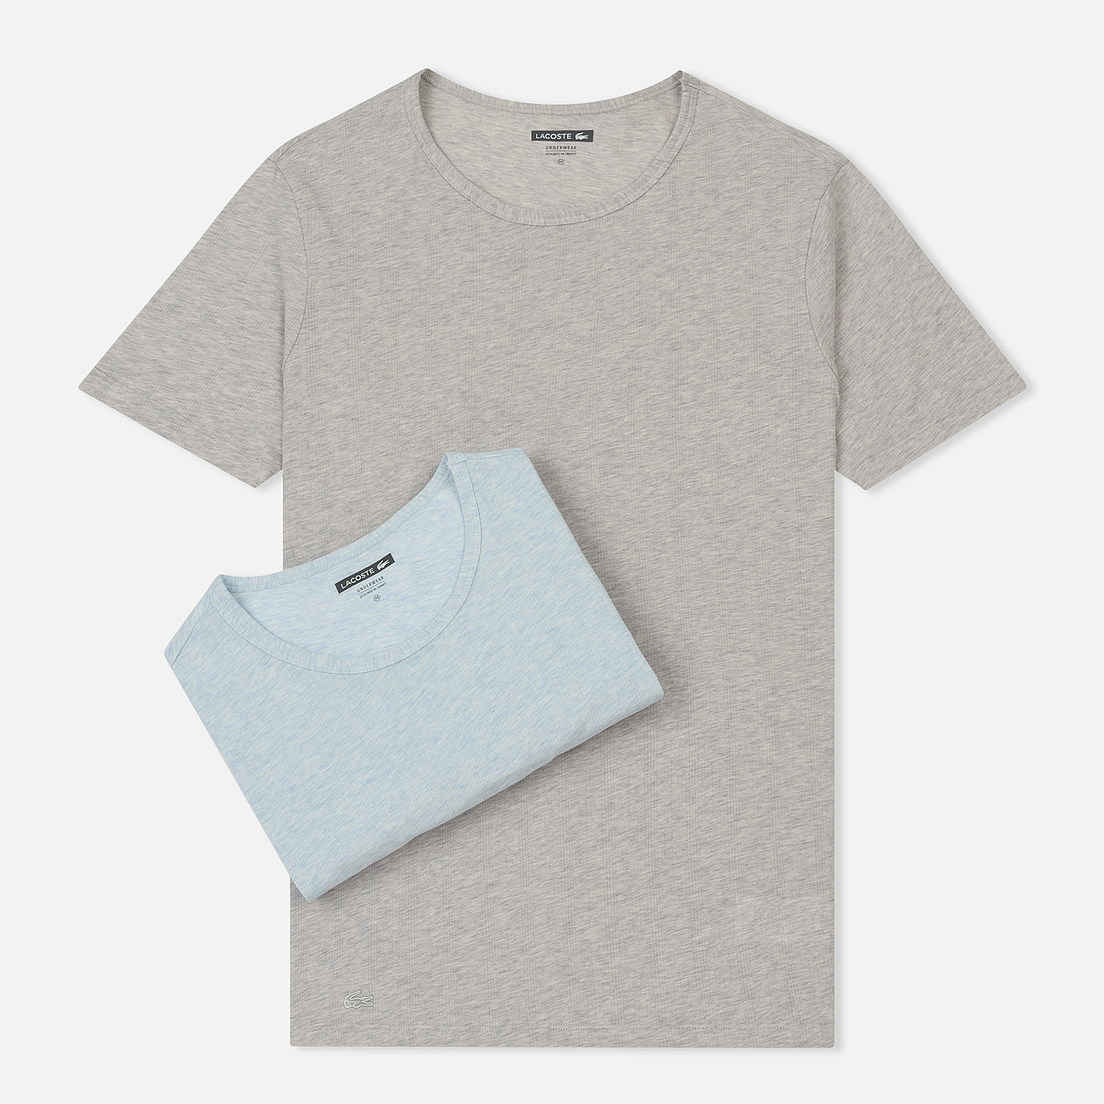 Lacoste Underwear Комплект мужских футболок 2-Pack Crew Neck